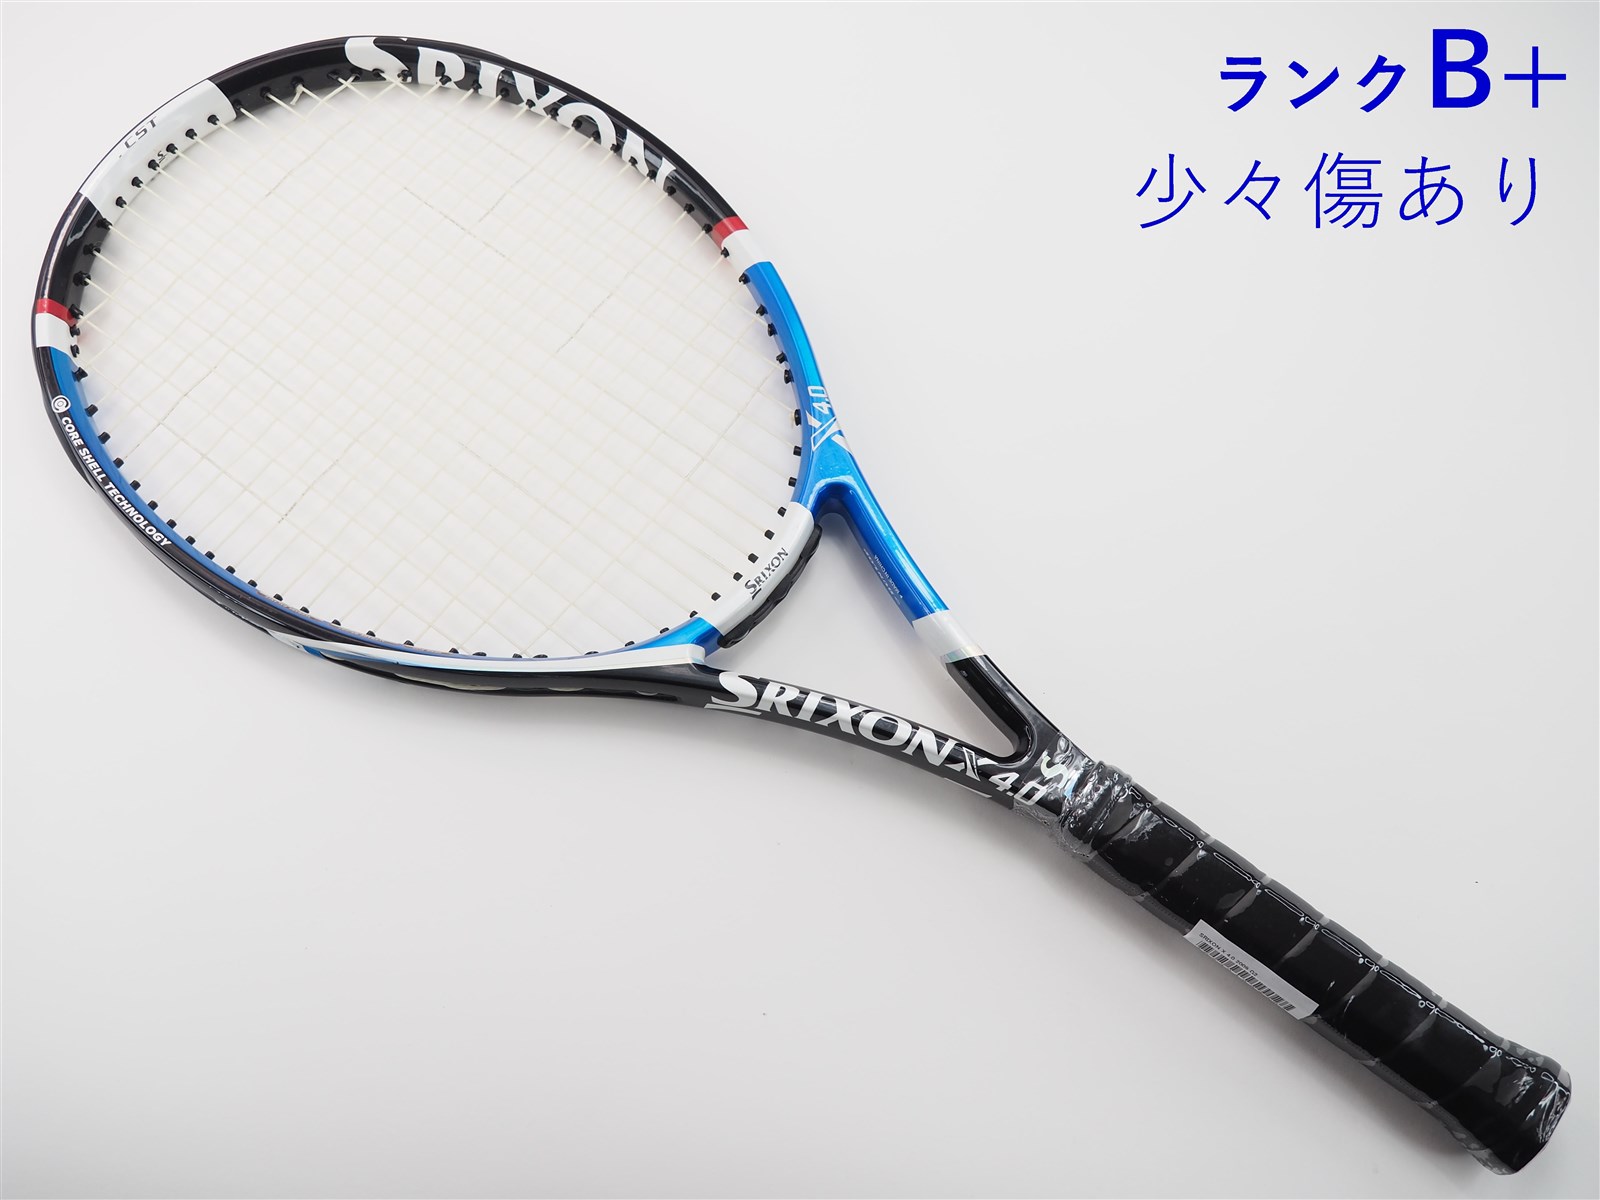 テニスラケット スリクソン レヴォ エックス 2.0 2011年モデル (G2)SRIXON REVO X 2.0 201198平方インチ長さ